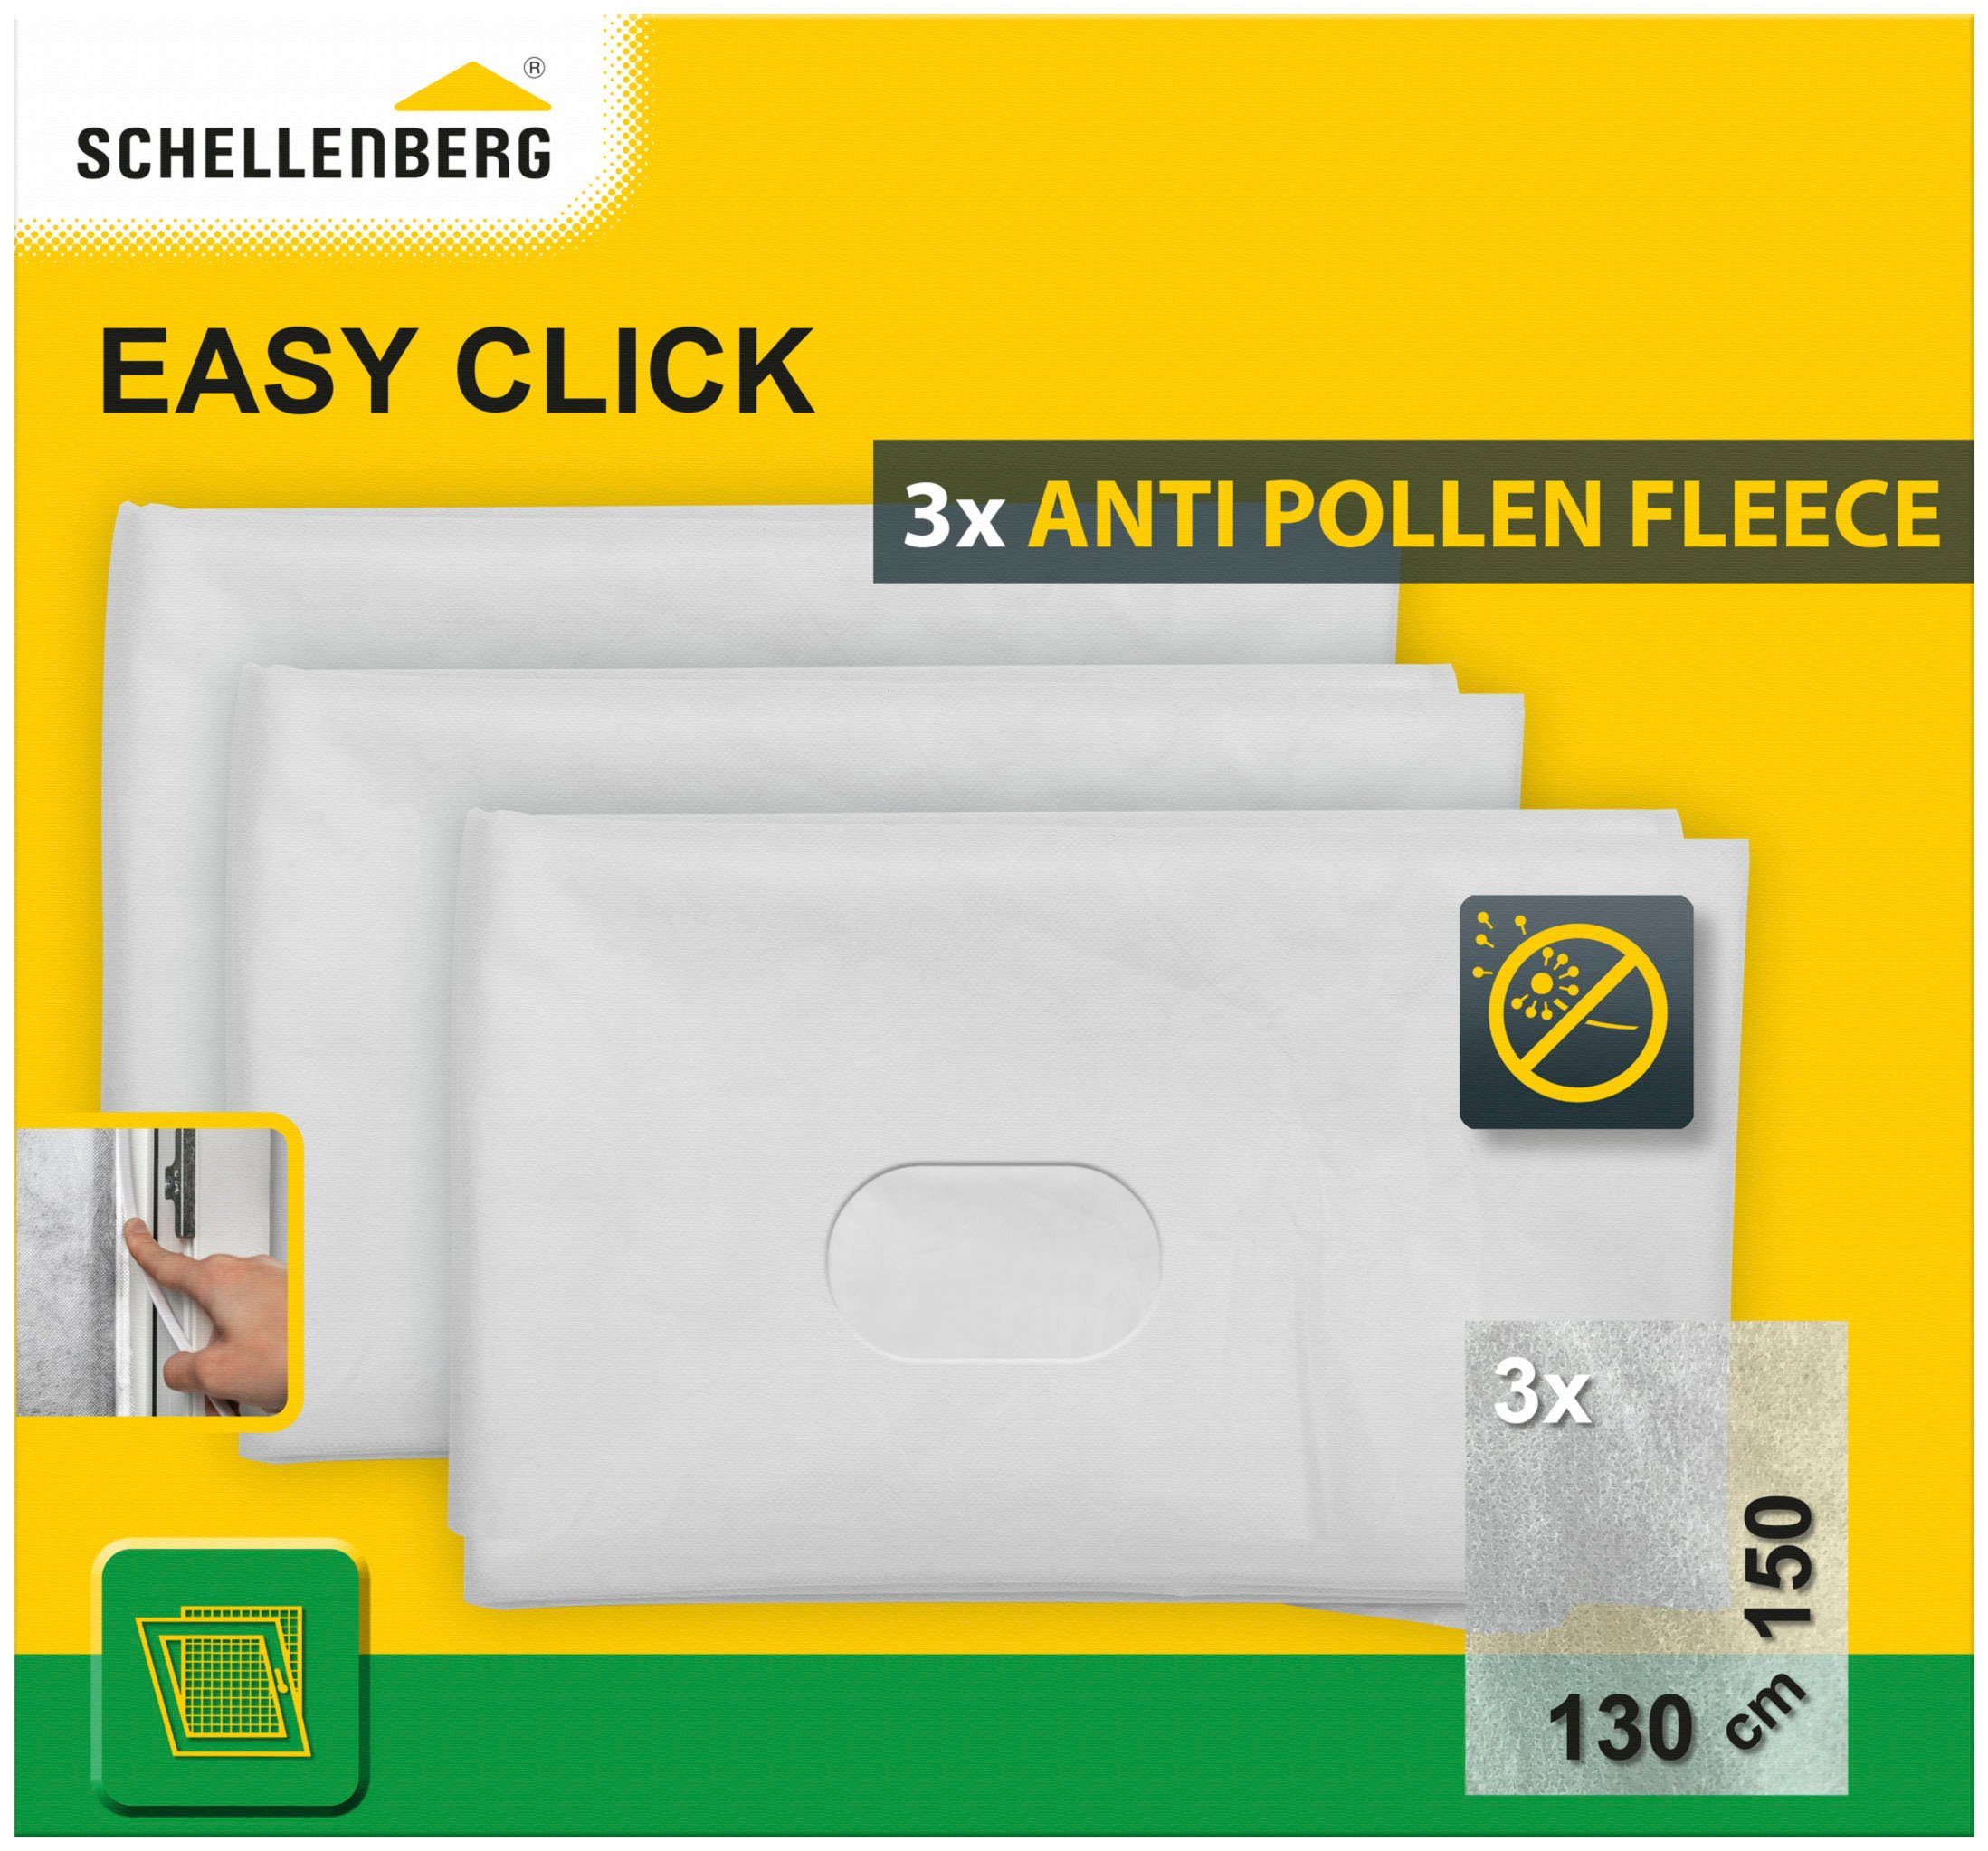 SCHELLENBERG Fliegengitter-Gewebe Pollenschutz für Fenster 3er-Pack, 130 150 weiß, im Austauschset Pollenschutzvlies Click, cm, x Easy 70473